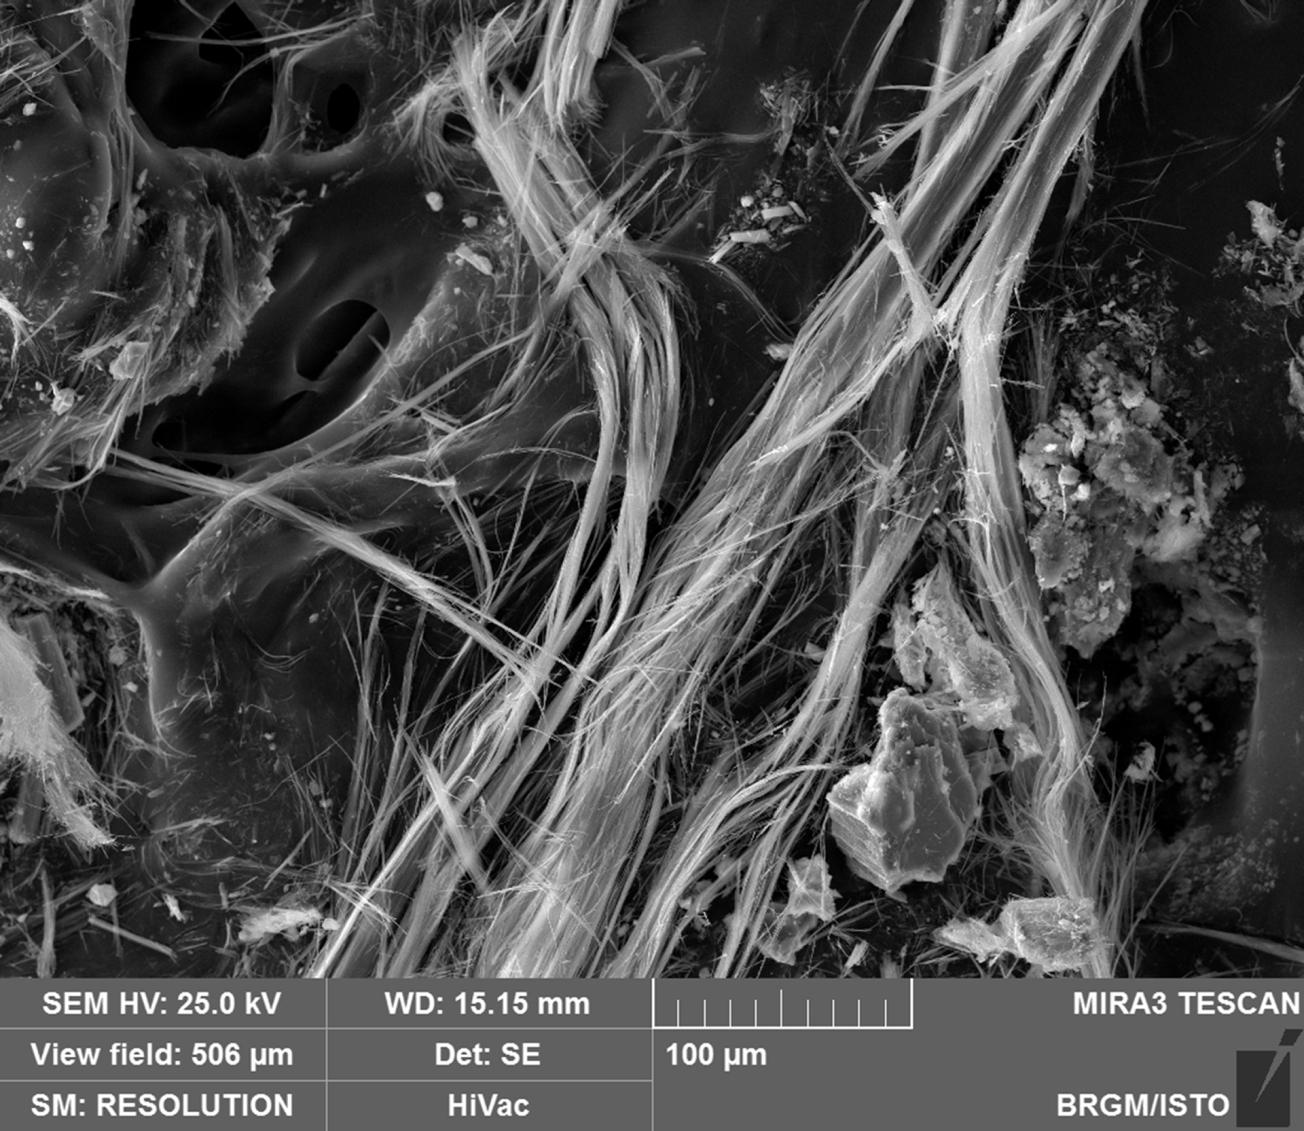 Paquets flexueux de fibres asbestiformes observés au MEB 